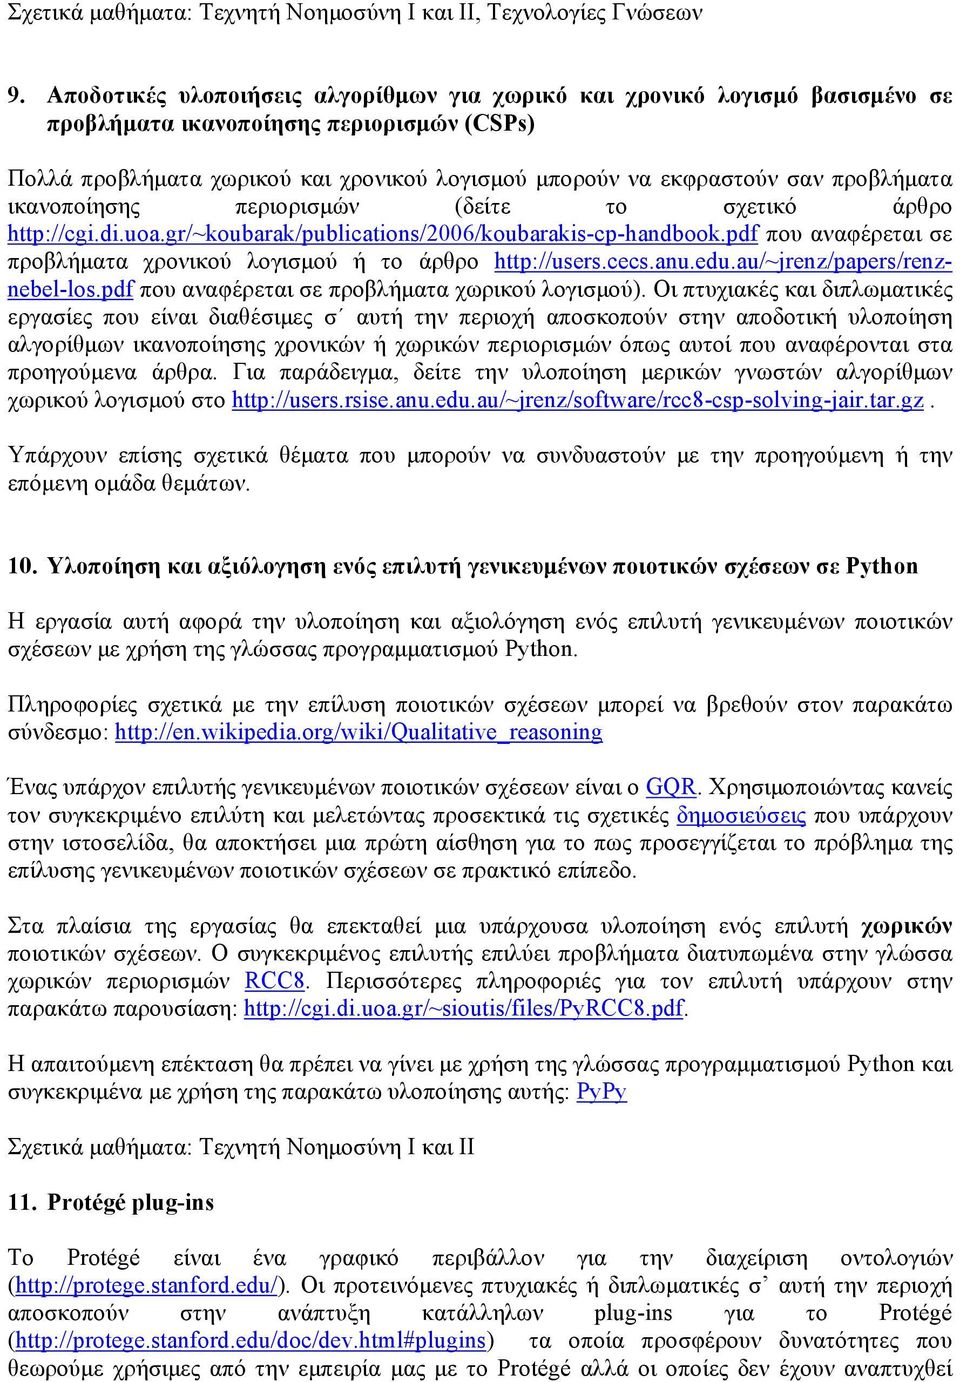 προβλήματα ικανοποίησης περιορισμών (δείτε το σχετικό άρθρο http://cgi.di.uoa.gr/~koubarak/publications/2006/koubarakis-cp-handbook.